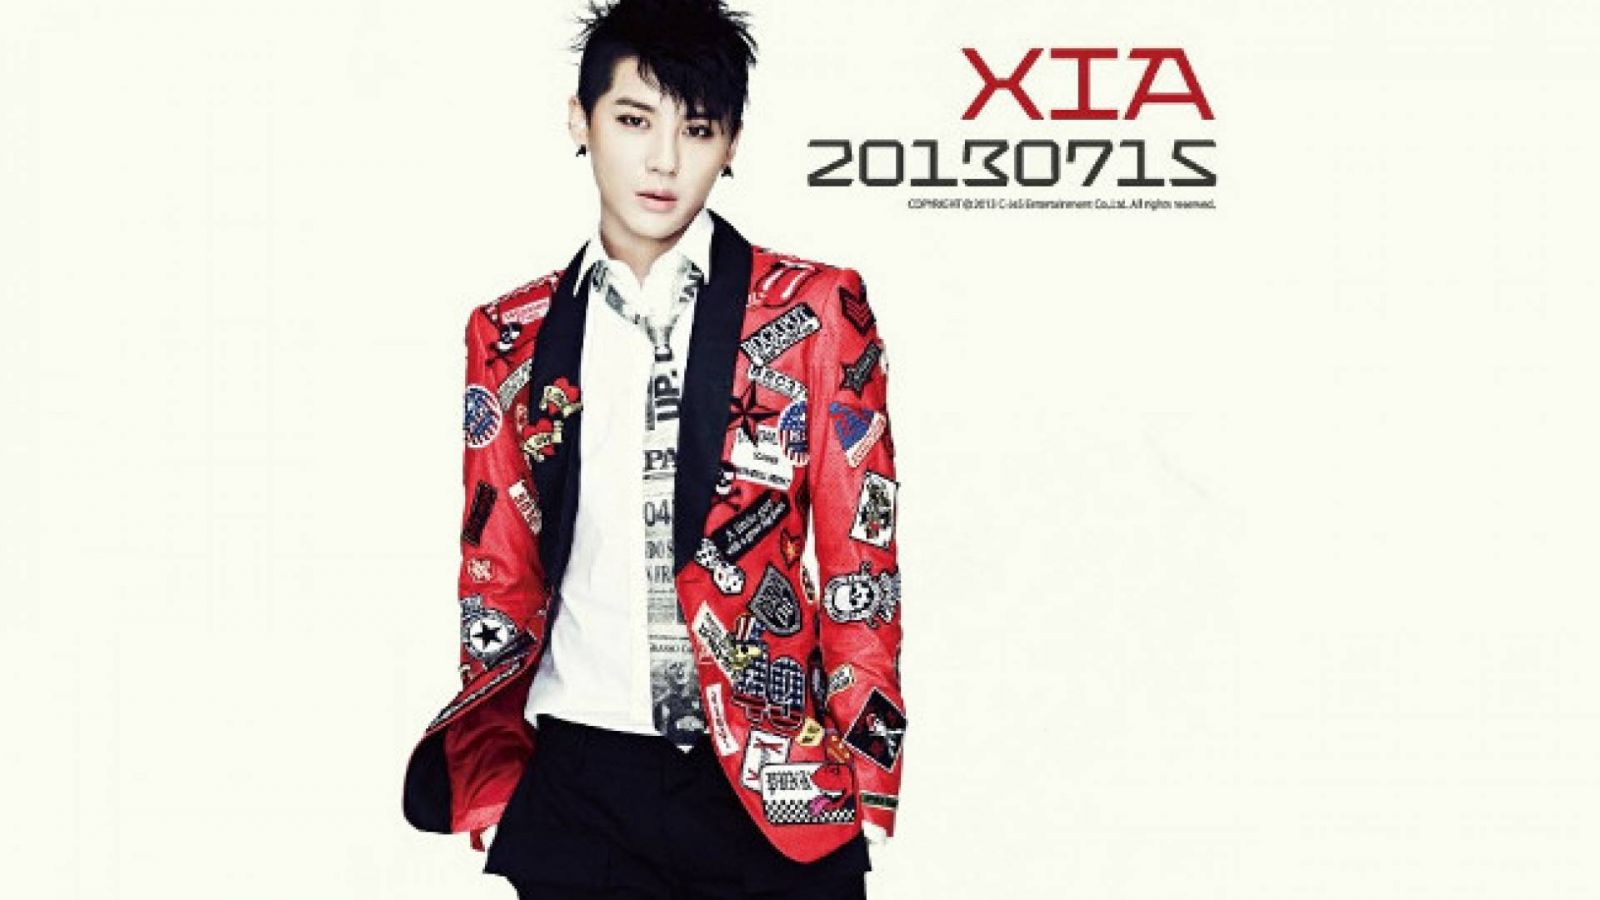 Informações sobre o novo álbum de XIA © C-Jes Entertainment